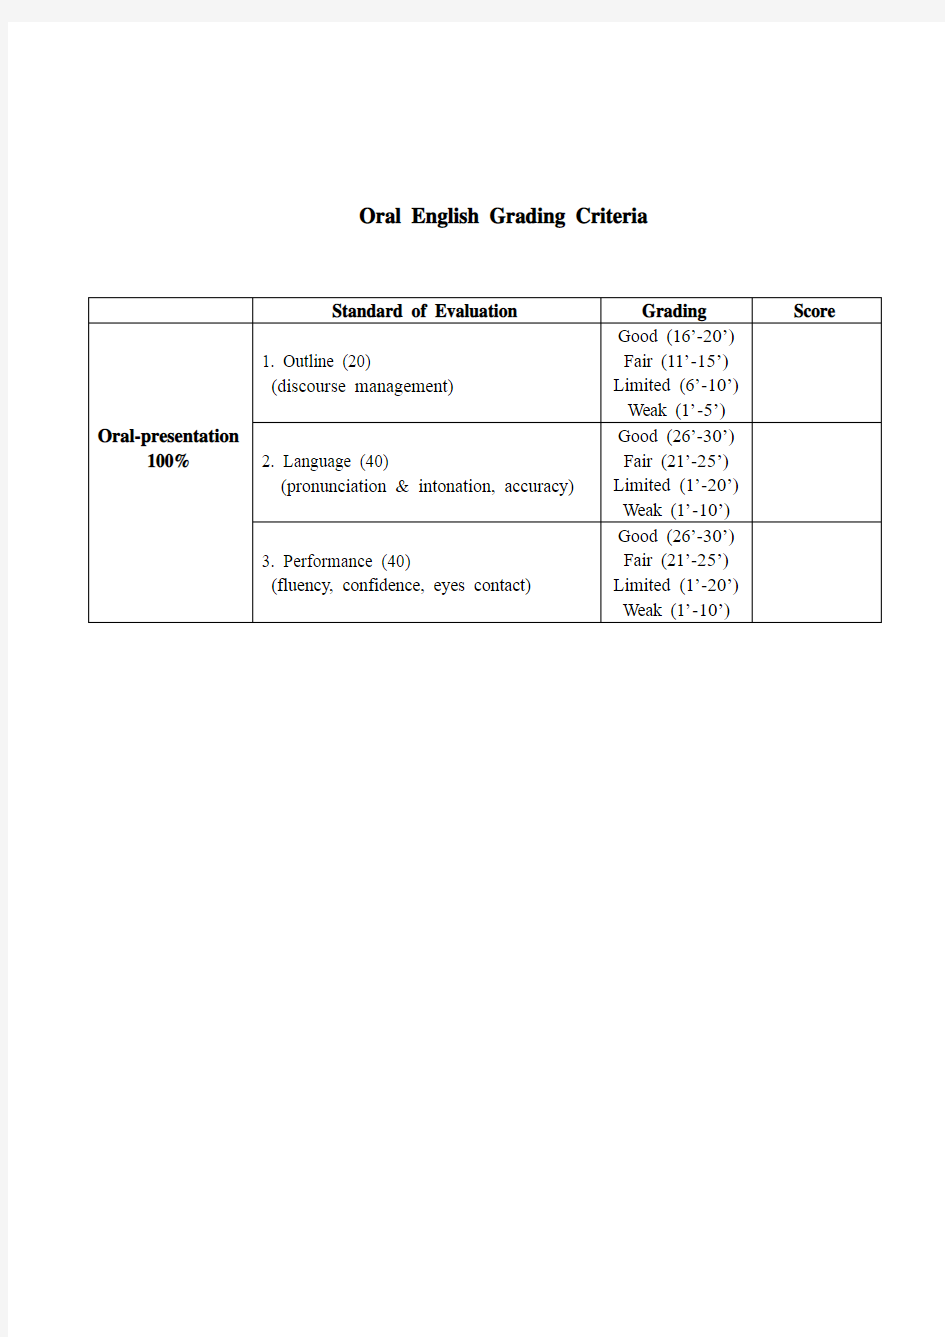 英语口语(英文版)评分标准;英语演讲比赛 (英文版)评分标准